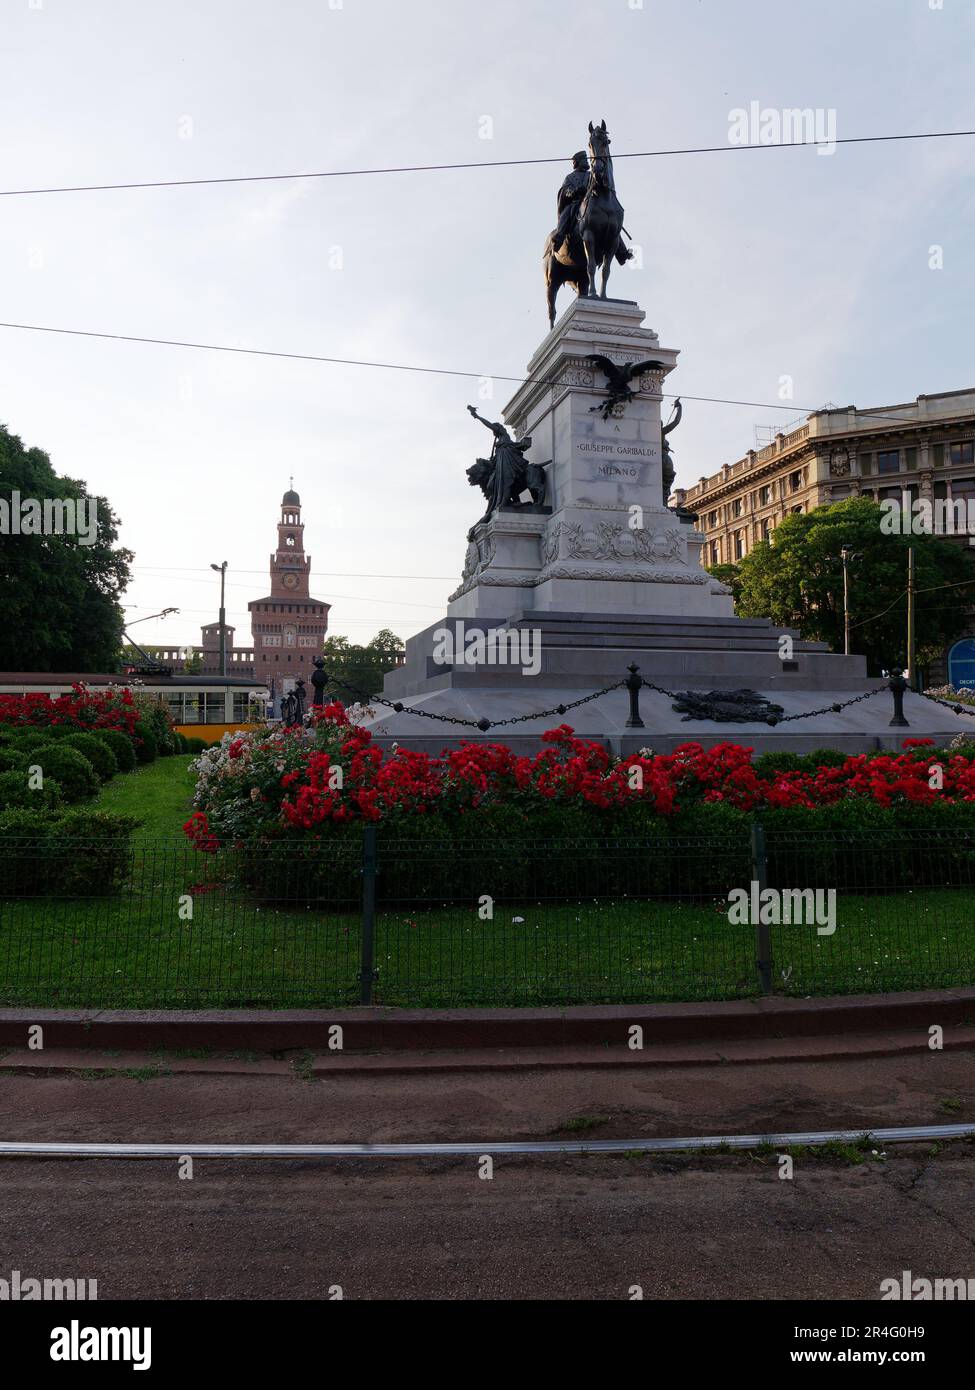 Statua equestre di Garibaldi circondata da fiori a largo Cairoli, Castello Sforzesco alle spalle, Milano, Lombardia, Italia Foto Stock